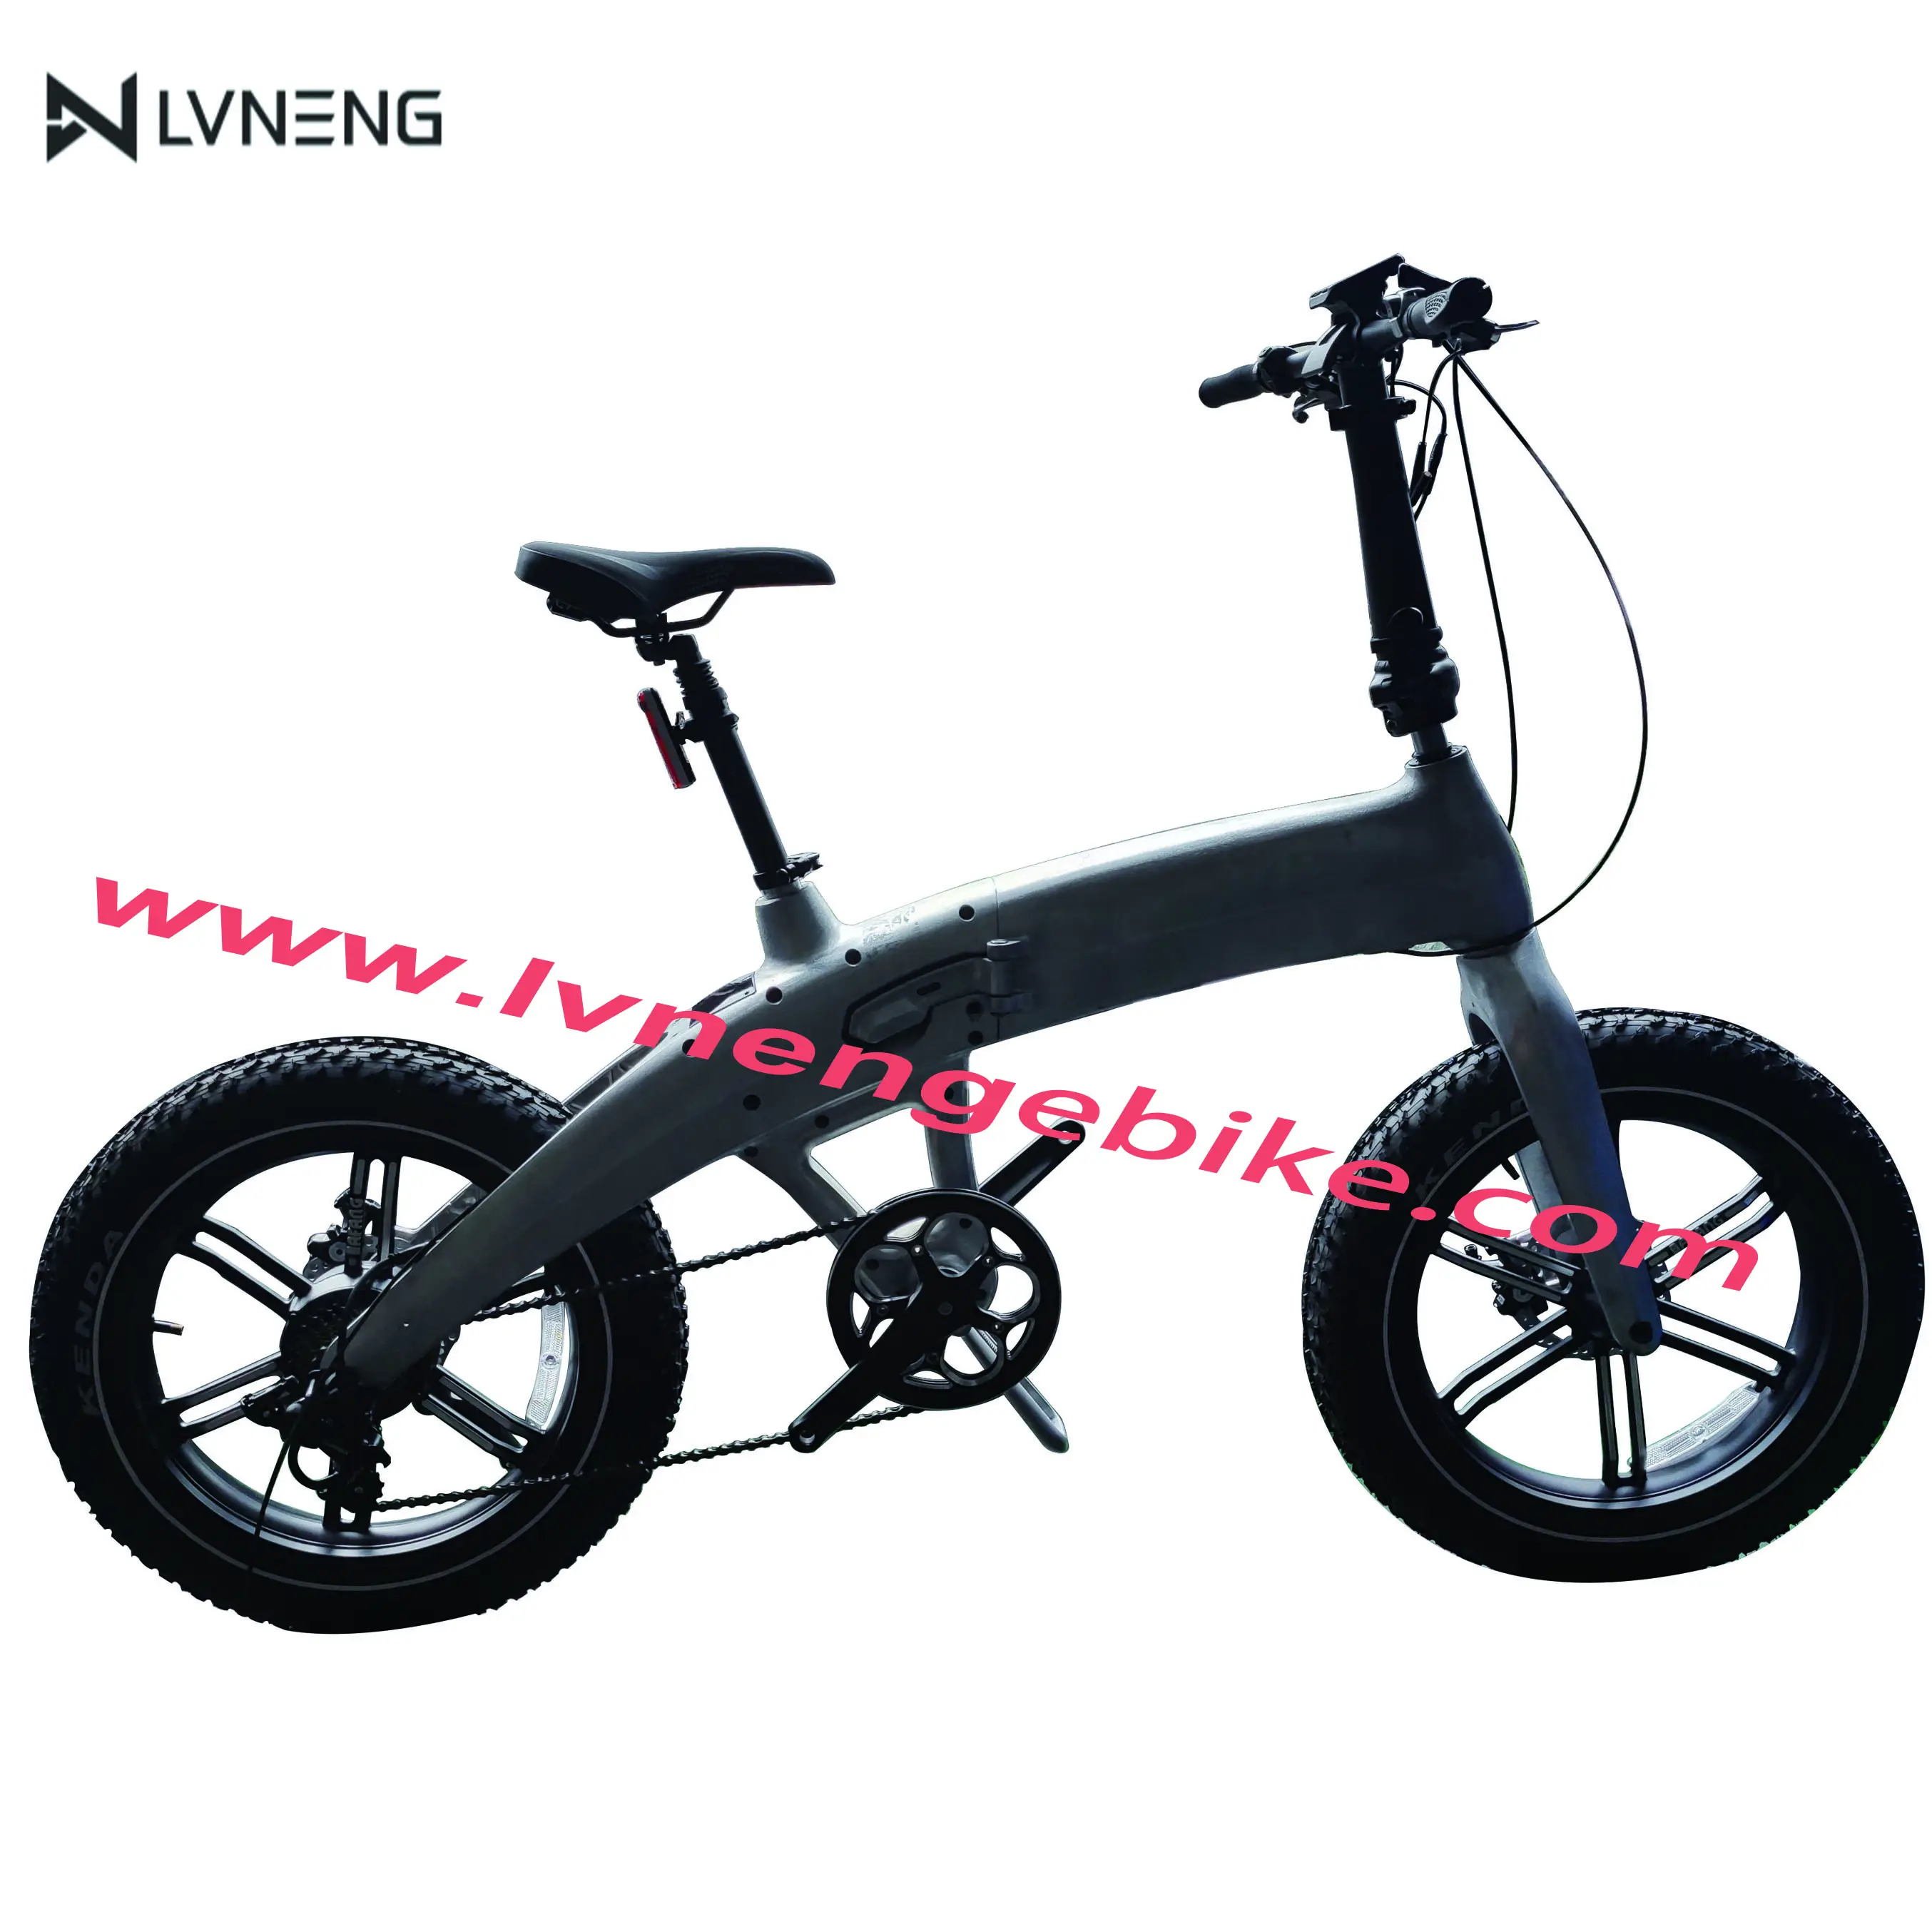 Lvneng-bicicleta eléctrica plegable, neumático ancho, retro, con nuevo diseño, prototipo alfa